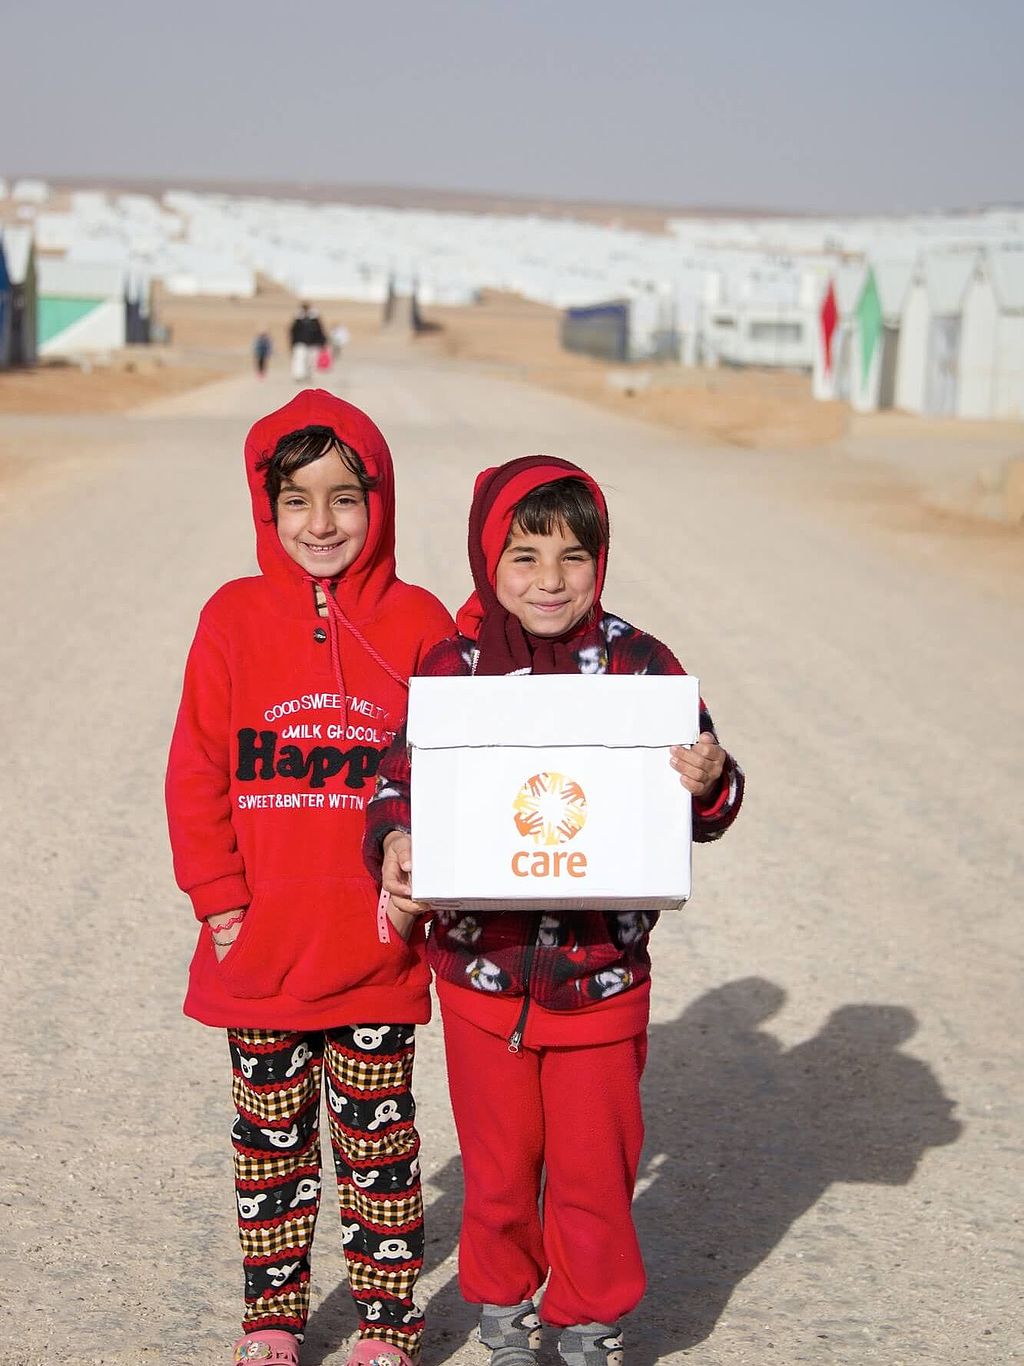 Zwei Mädchen im Flüchtlingslager in Jordanien mit CARE-Paket